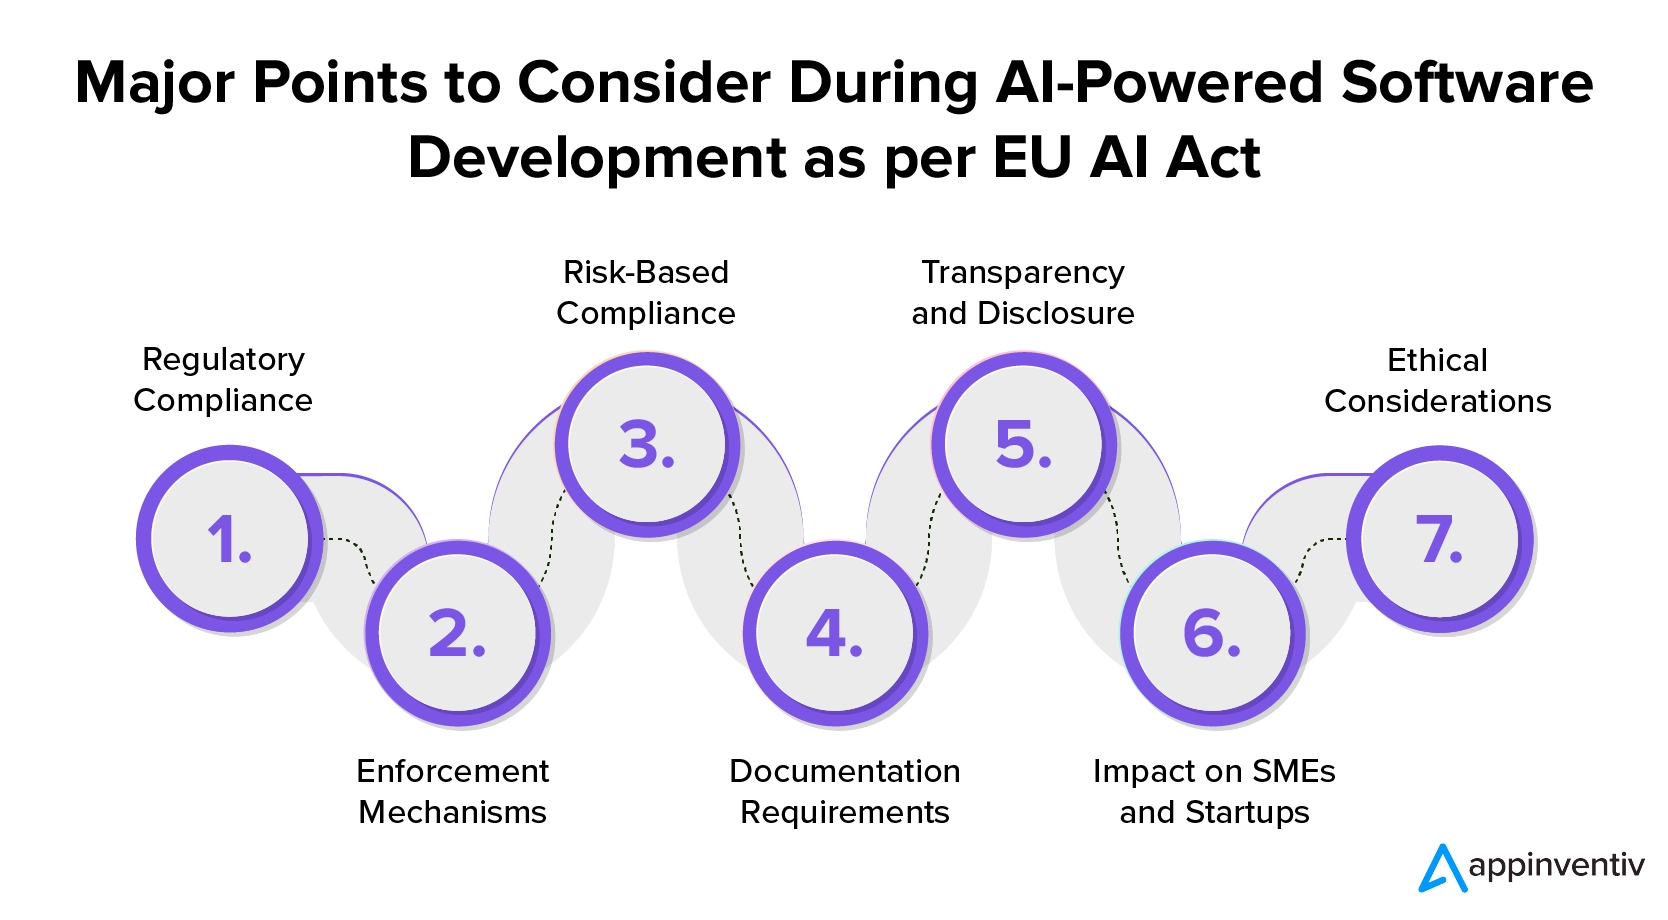 ประเด็นสำคัญที่ต้องพิจารณาในระหว่างการพัฒนาซอฟต์แวร์ที่ขับเคลื่อนด้วย AI ตามกฎหมาย AI ของสหภาพยุโรป